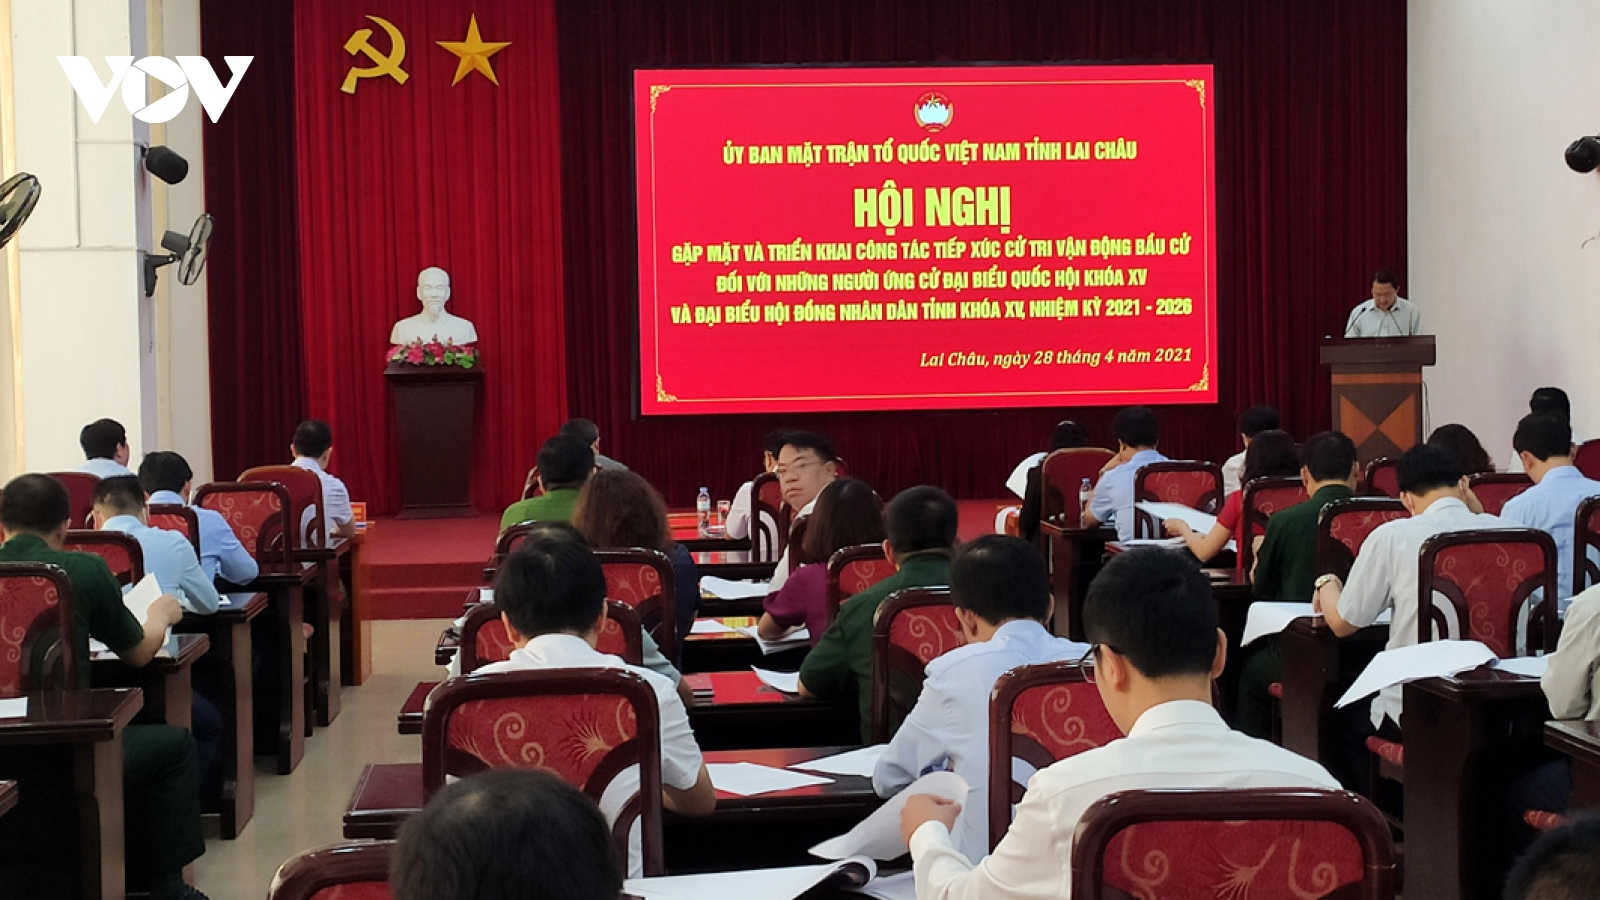 Lai Châu gặp mặt người ứng cử đại biểu Quốc hội và HĐND tỉnh